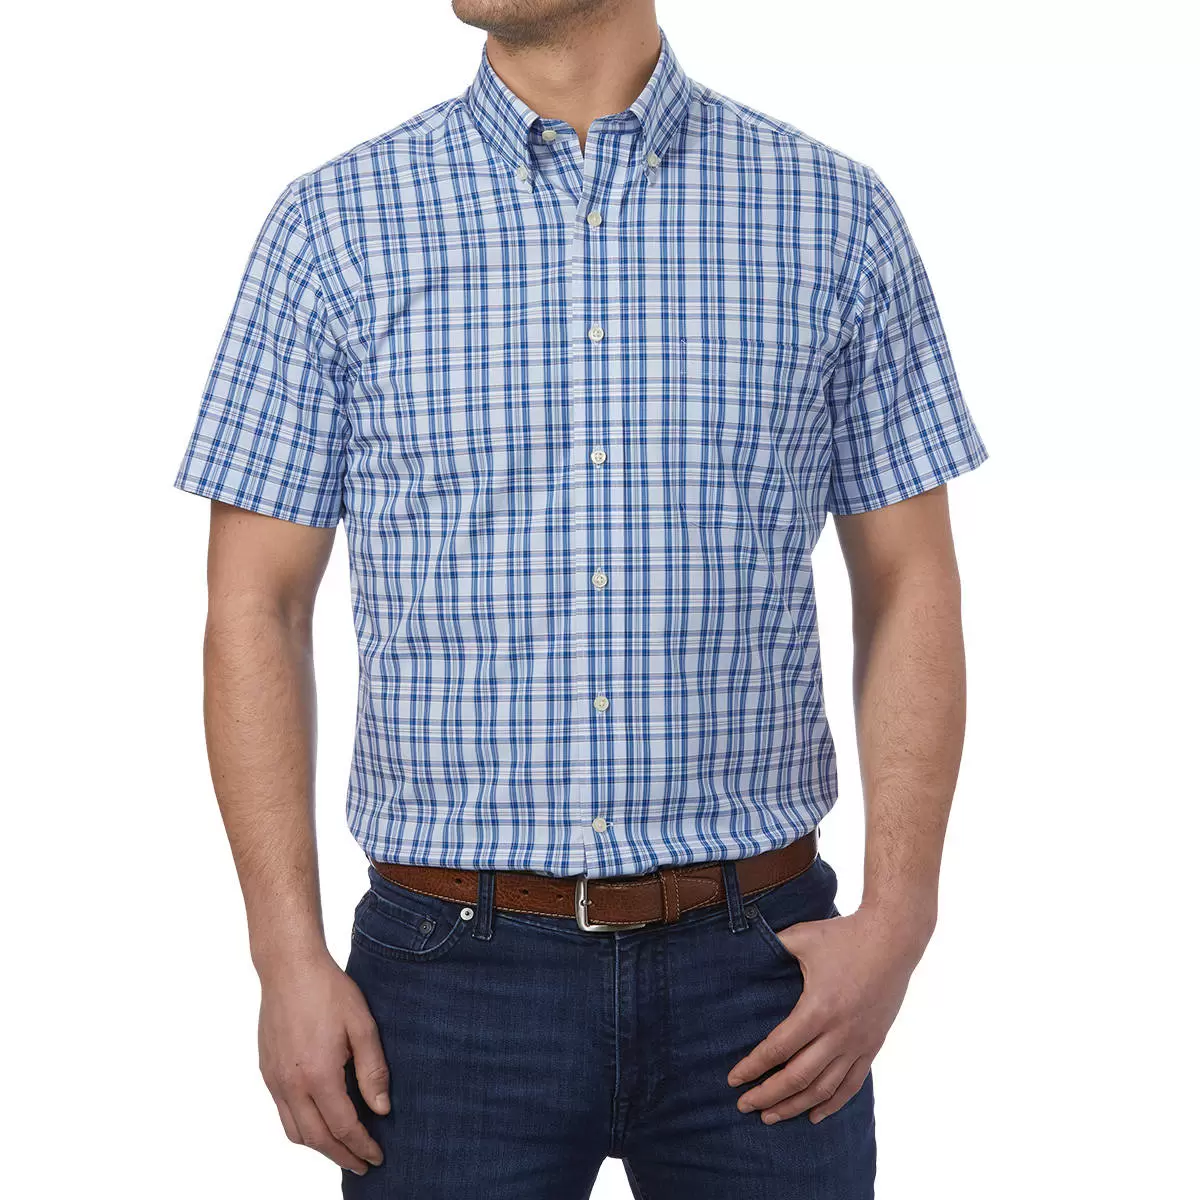 Kirkland Signature 科克蘭 男短袖鈕扣領免燙彈性襯衫 淺藍底深藍格紋 XL